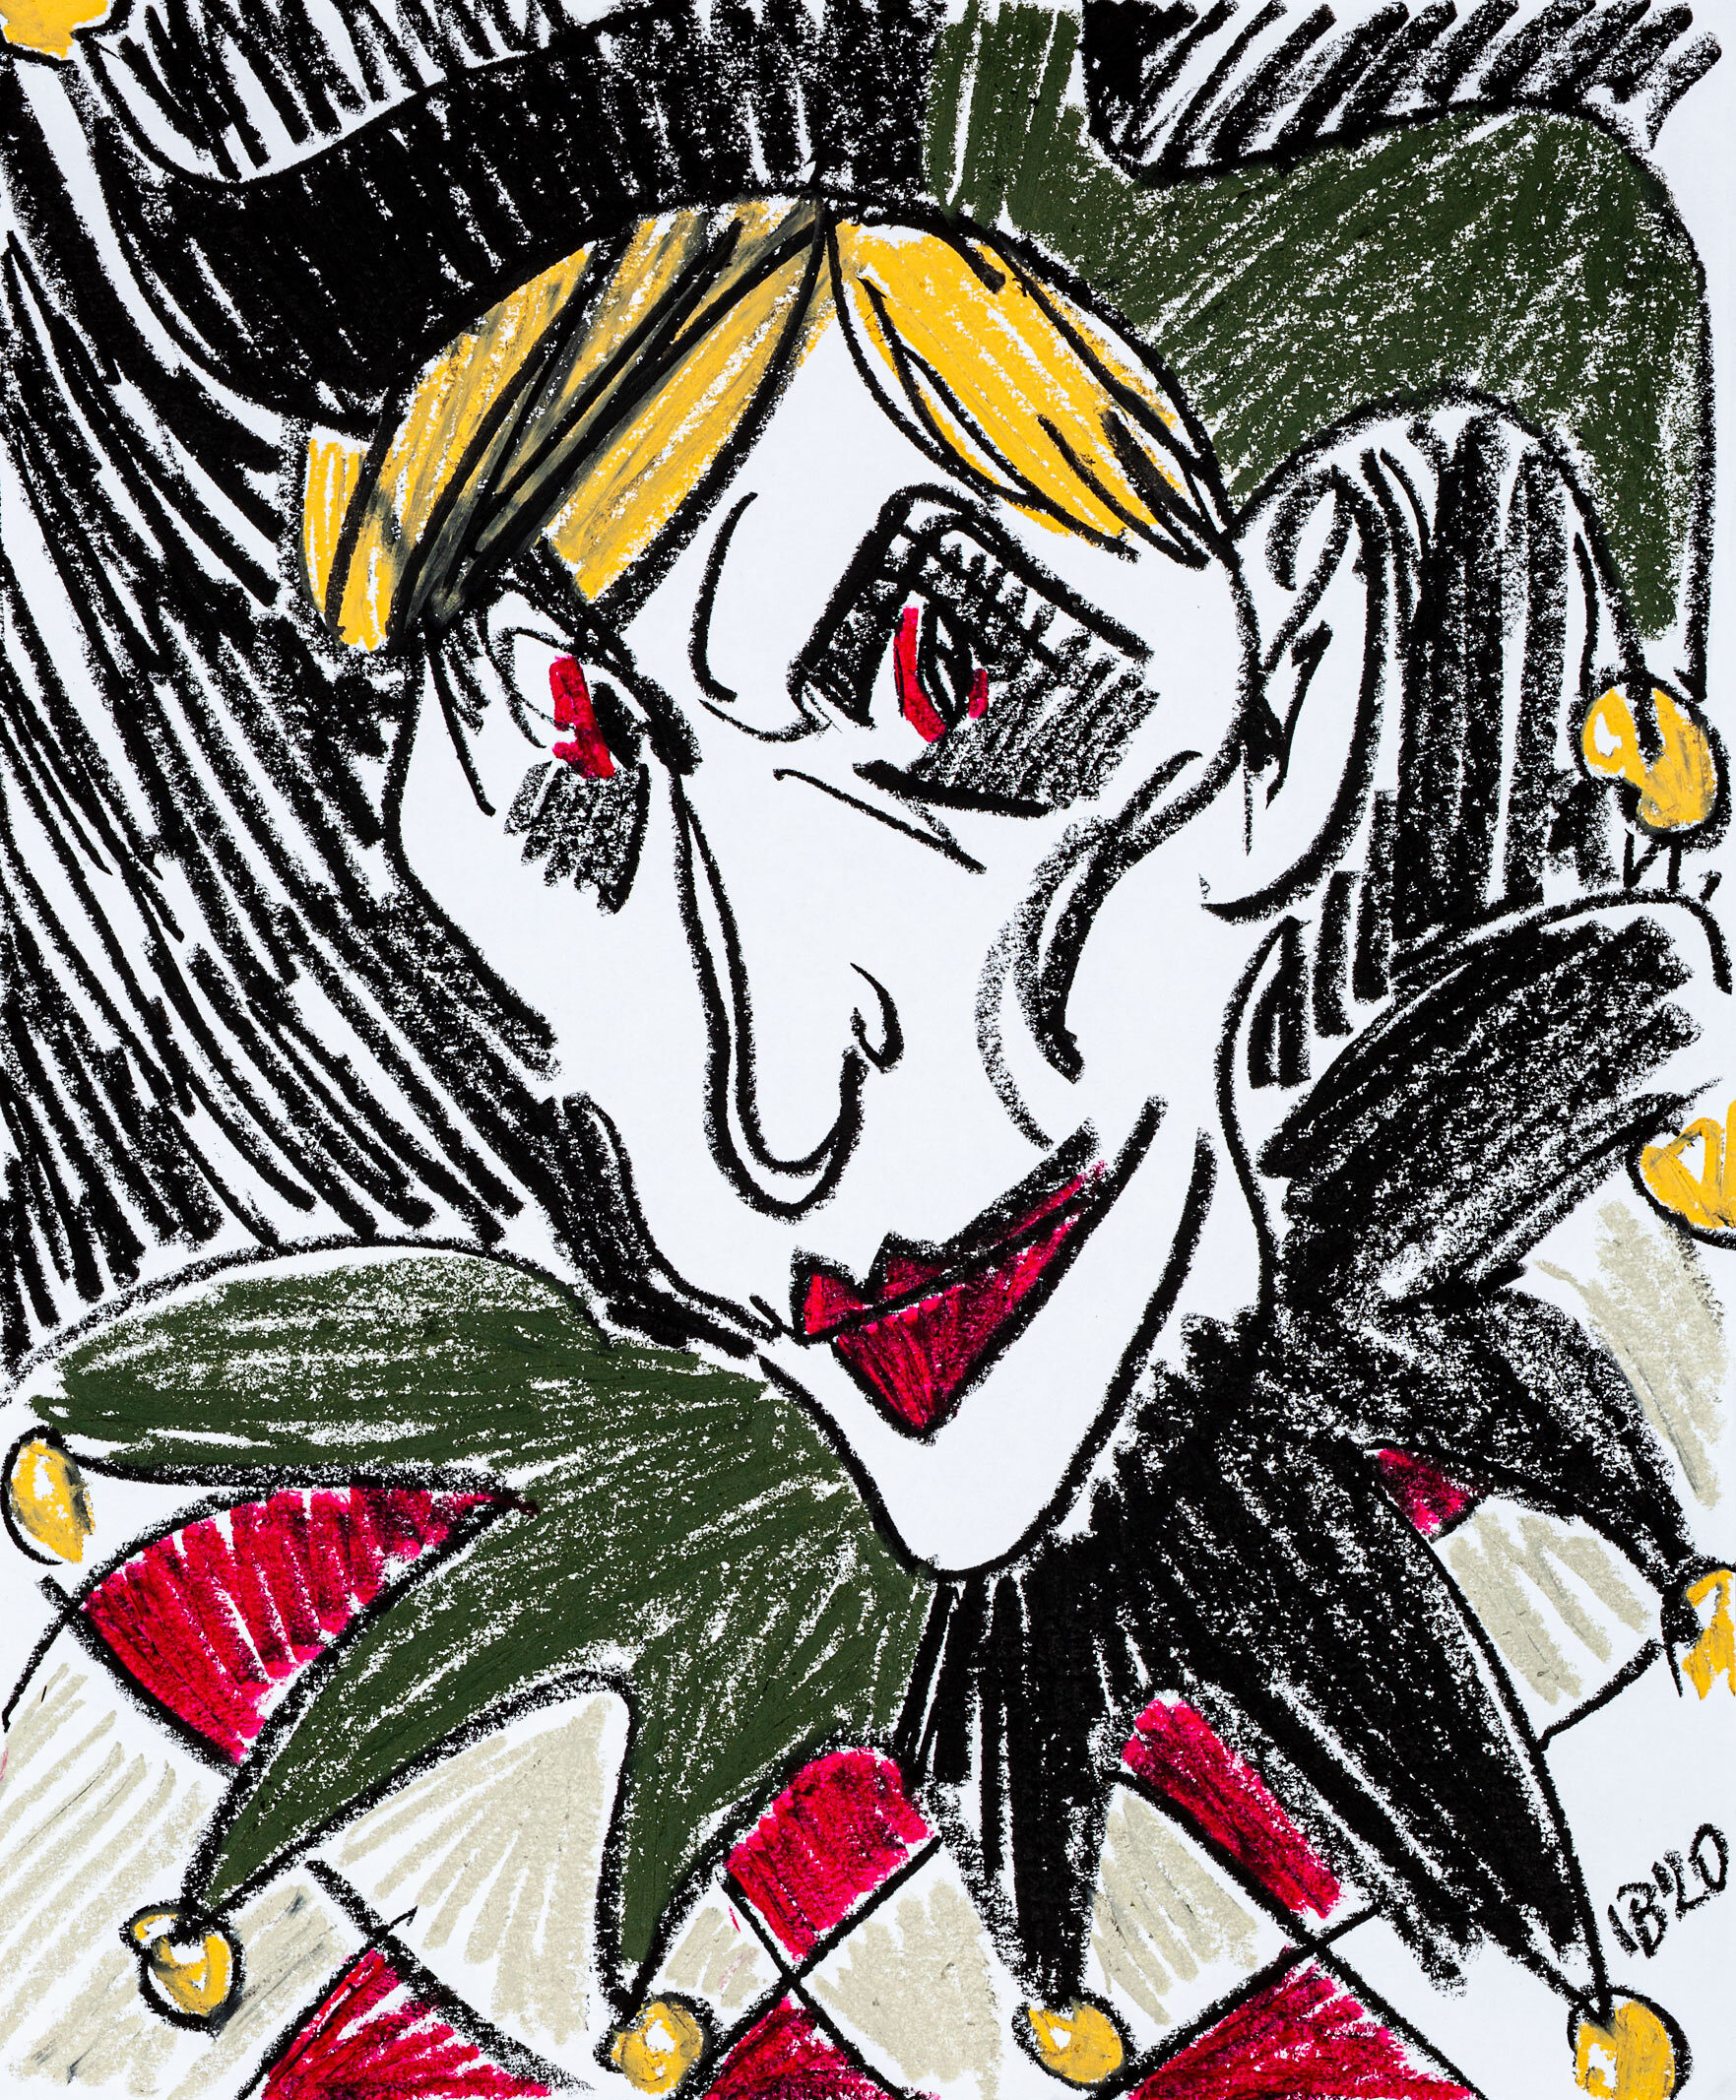 Joker Face, 2020 - oil pastel on paper, 14x17in